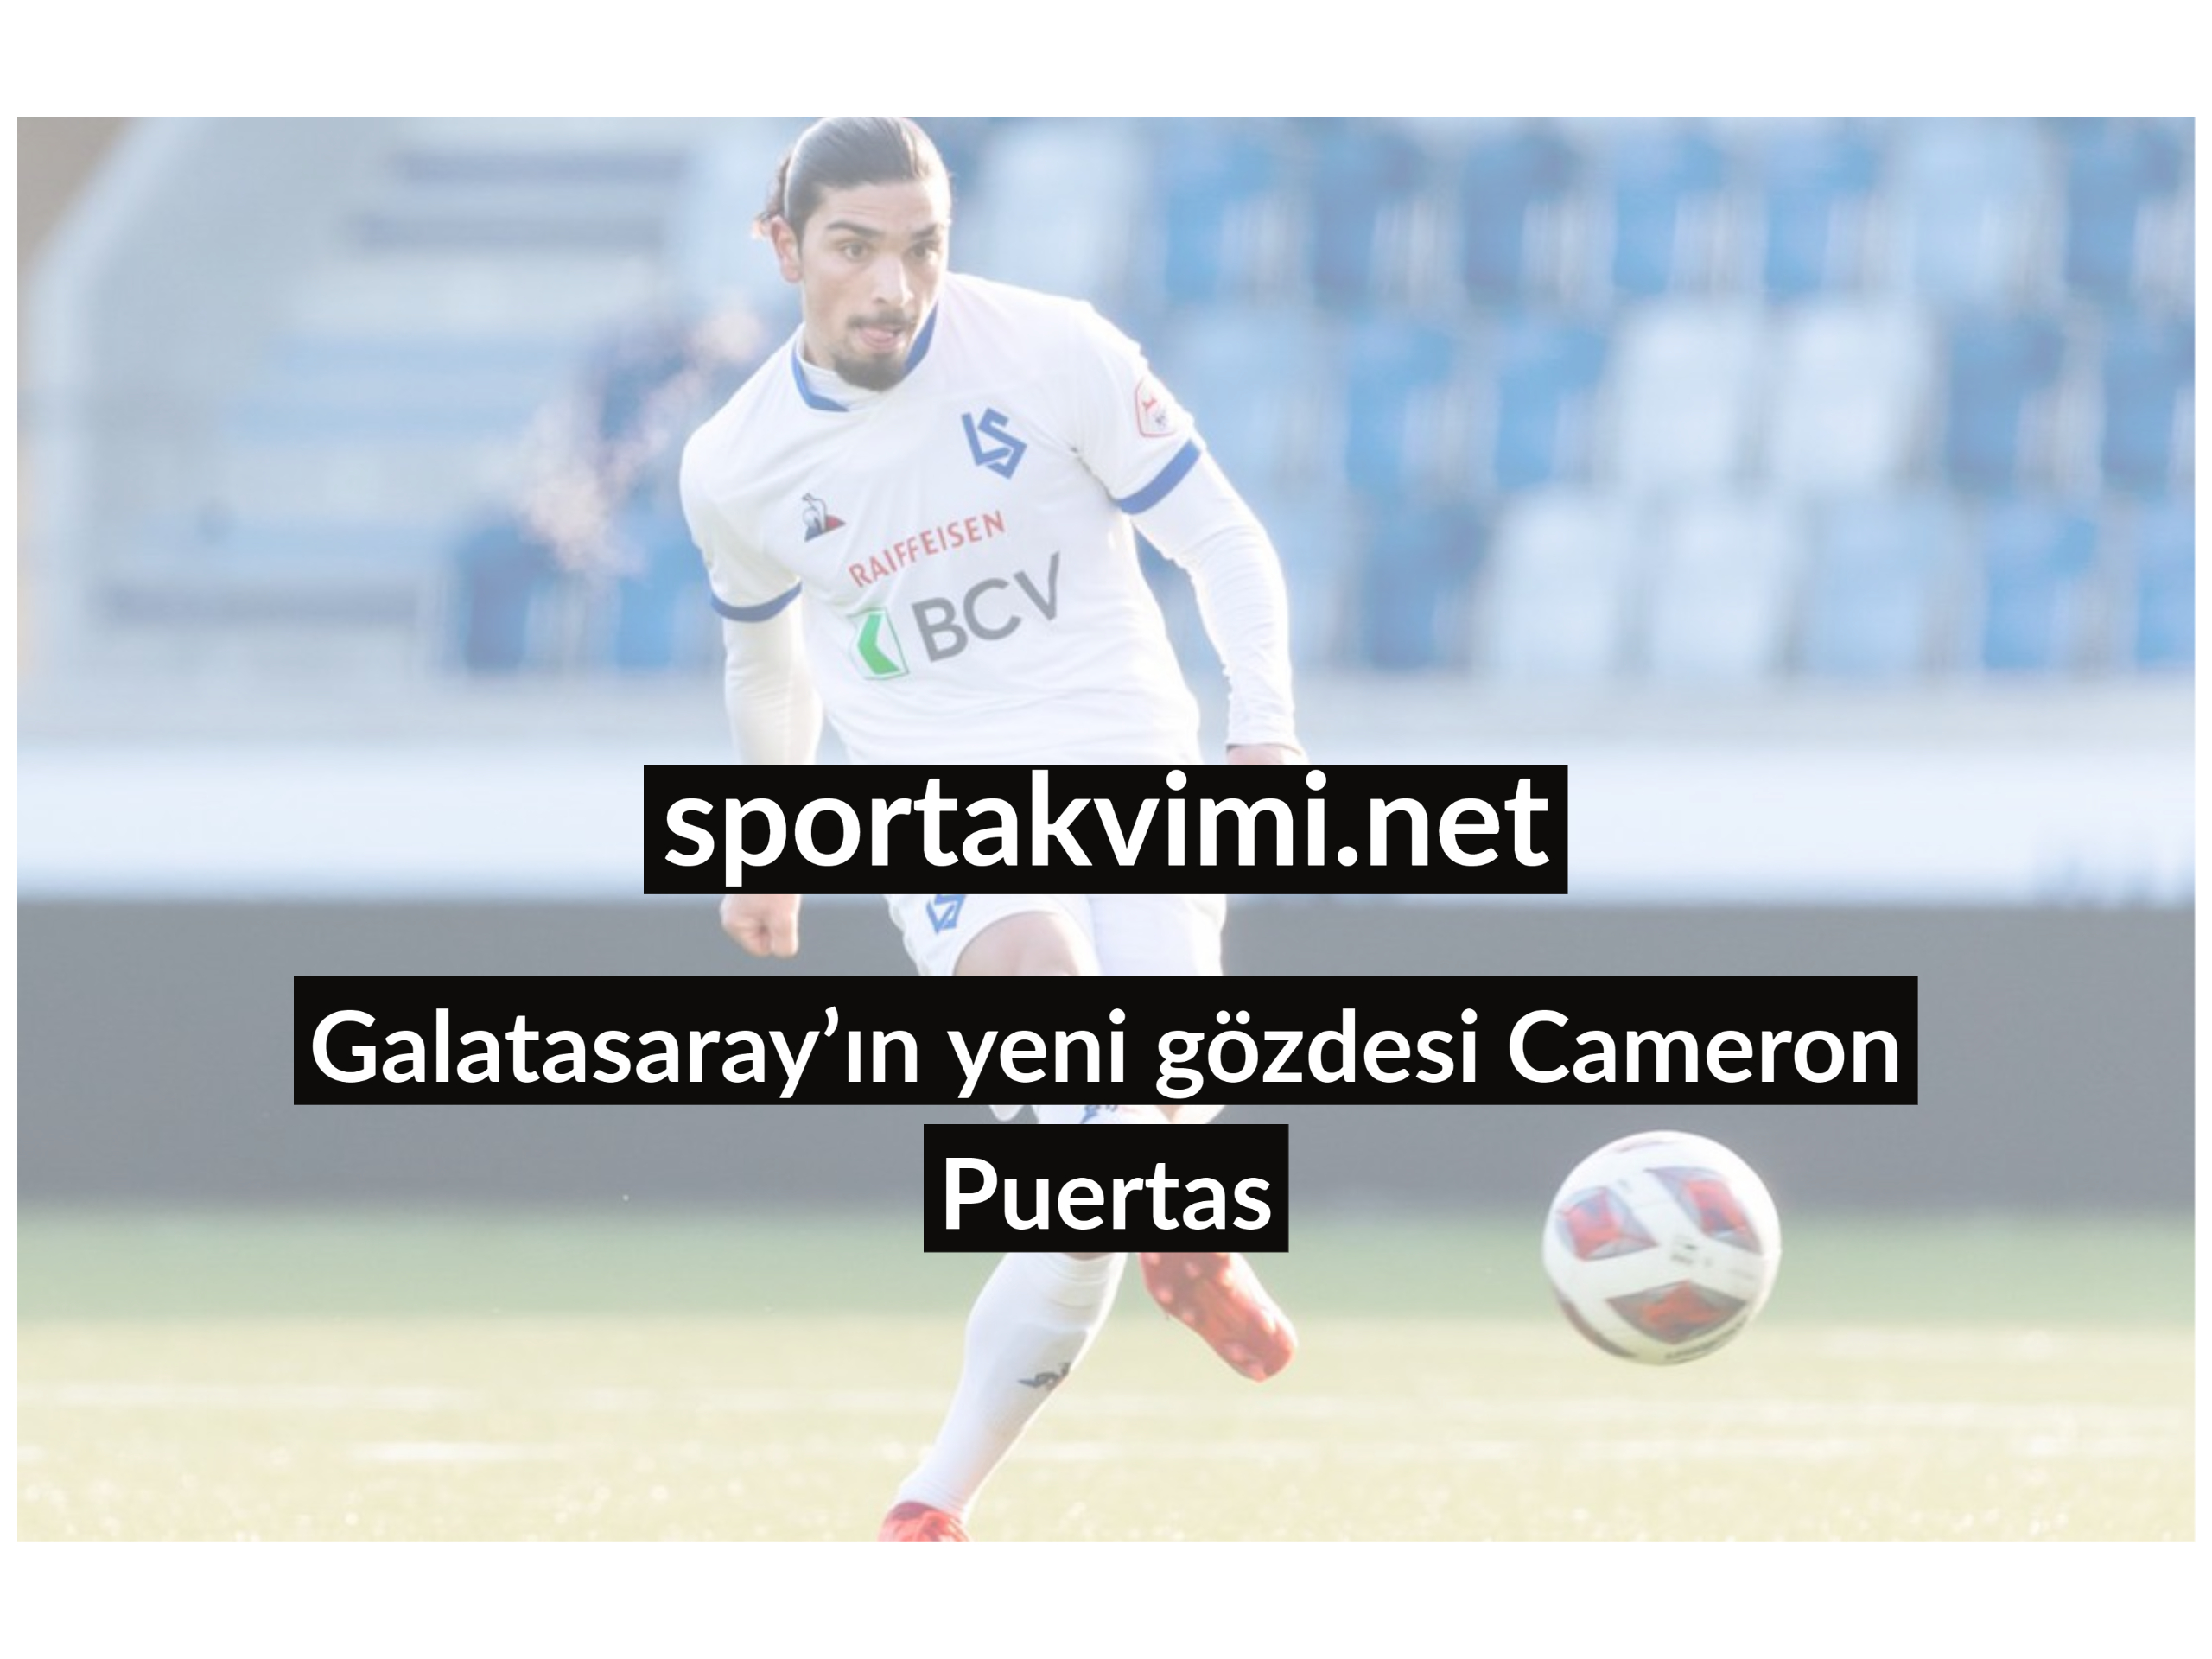 Galatasaray’ın yeni gözdesi Cameron Puertas